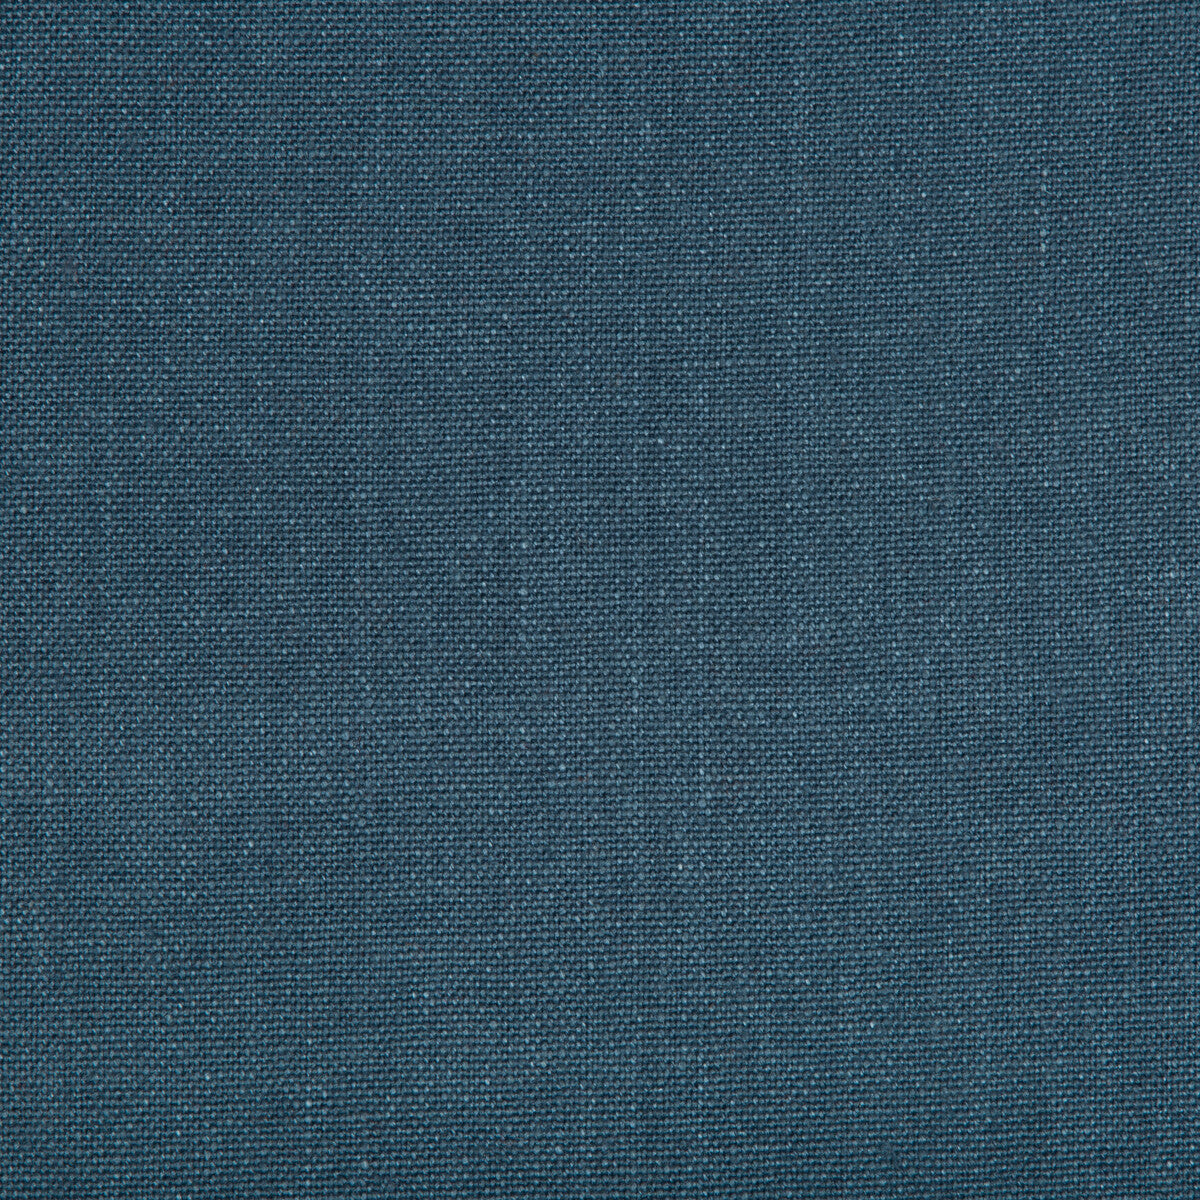 Kravet Basics fabric in 30421-55 color - pattern 30421.55.0 - by Kravet Basics